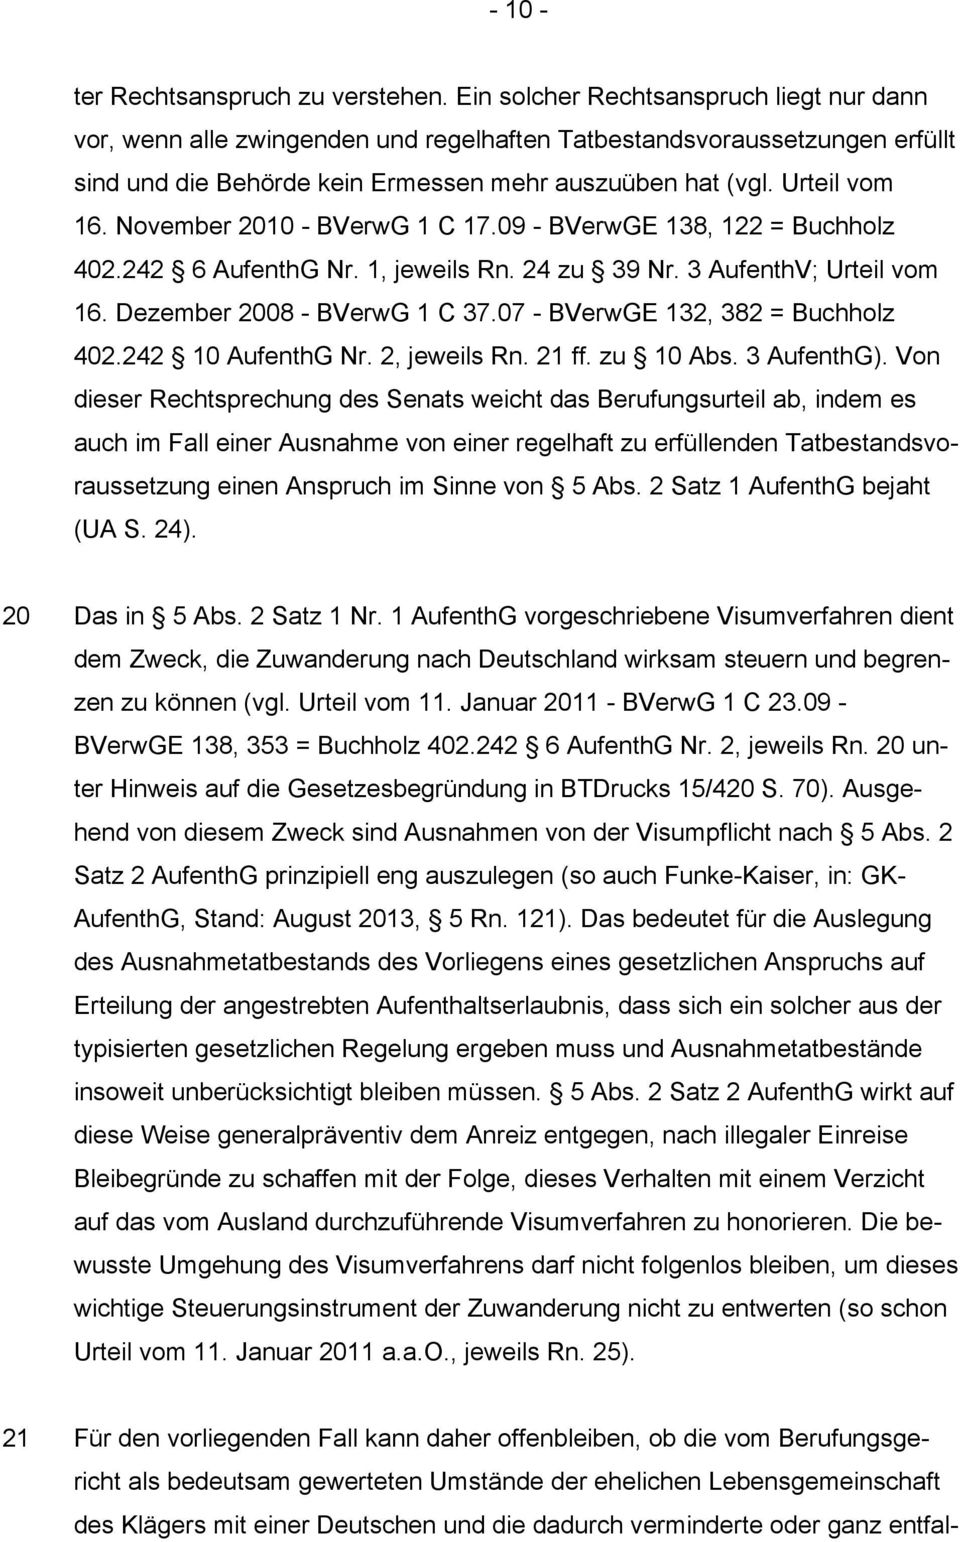 November 2010 - BVerwG 1 C 17.09 - BVerwGE 138, 122 = Buchholz 402.242 6 AufenthG Nr. 1, jeweils Rn. 24 zu 39 Nr. 3 AufenthV; Urteil vom 16. Dezember 2008 - BVerwG 1 C 37.